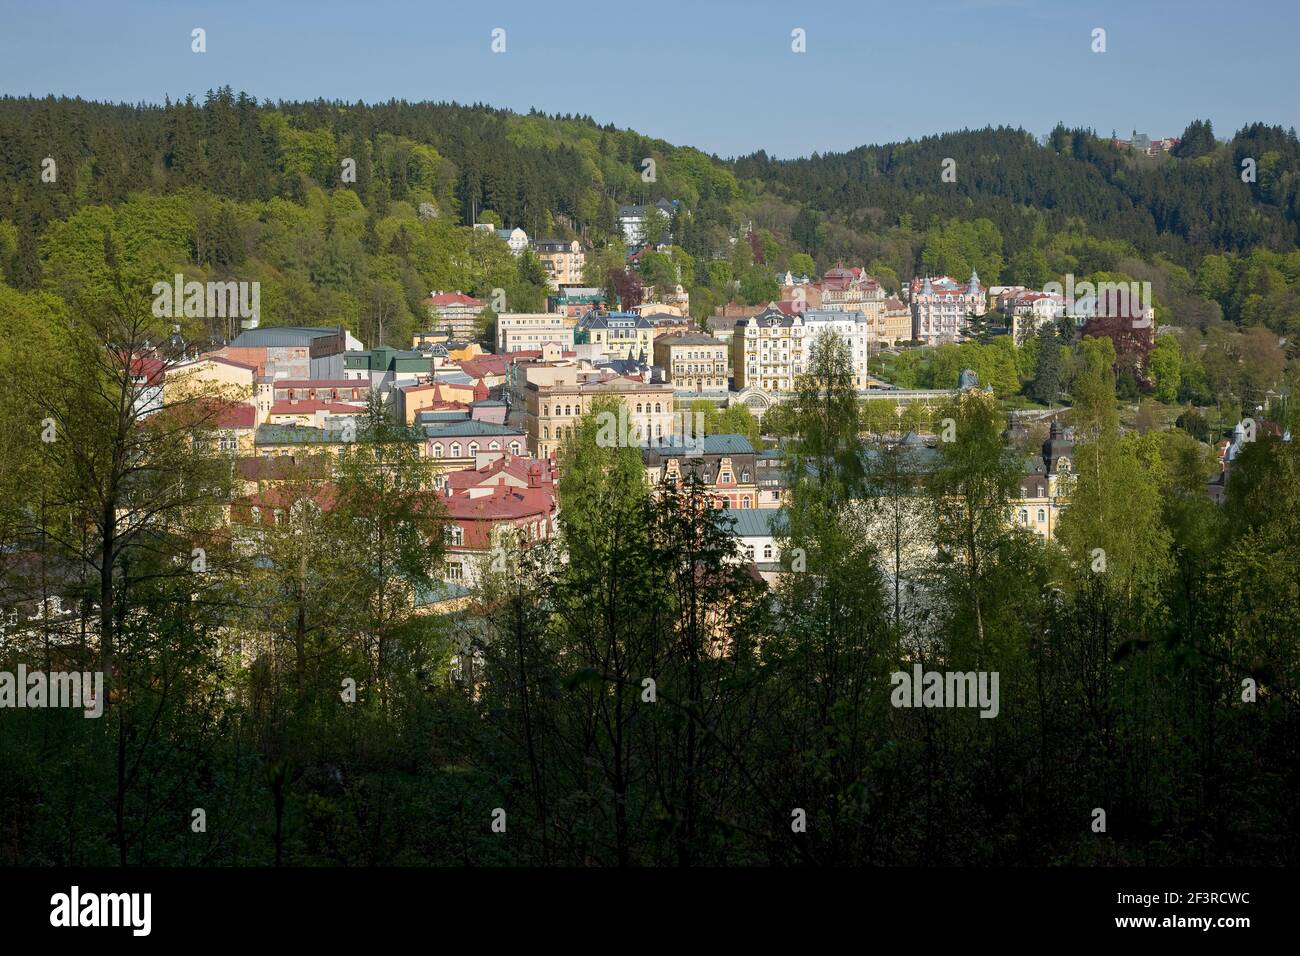 Marienbad Tschechische Republik  erbaut ca. 1813 - 1827 Aussichtspunkt Karola, Marienbad, Kuranlage Foto Stock